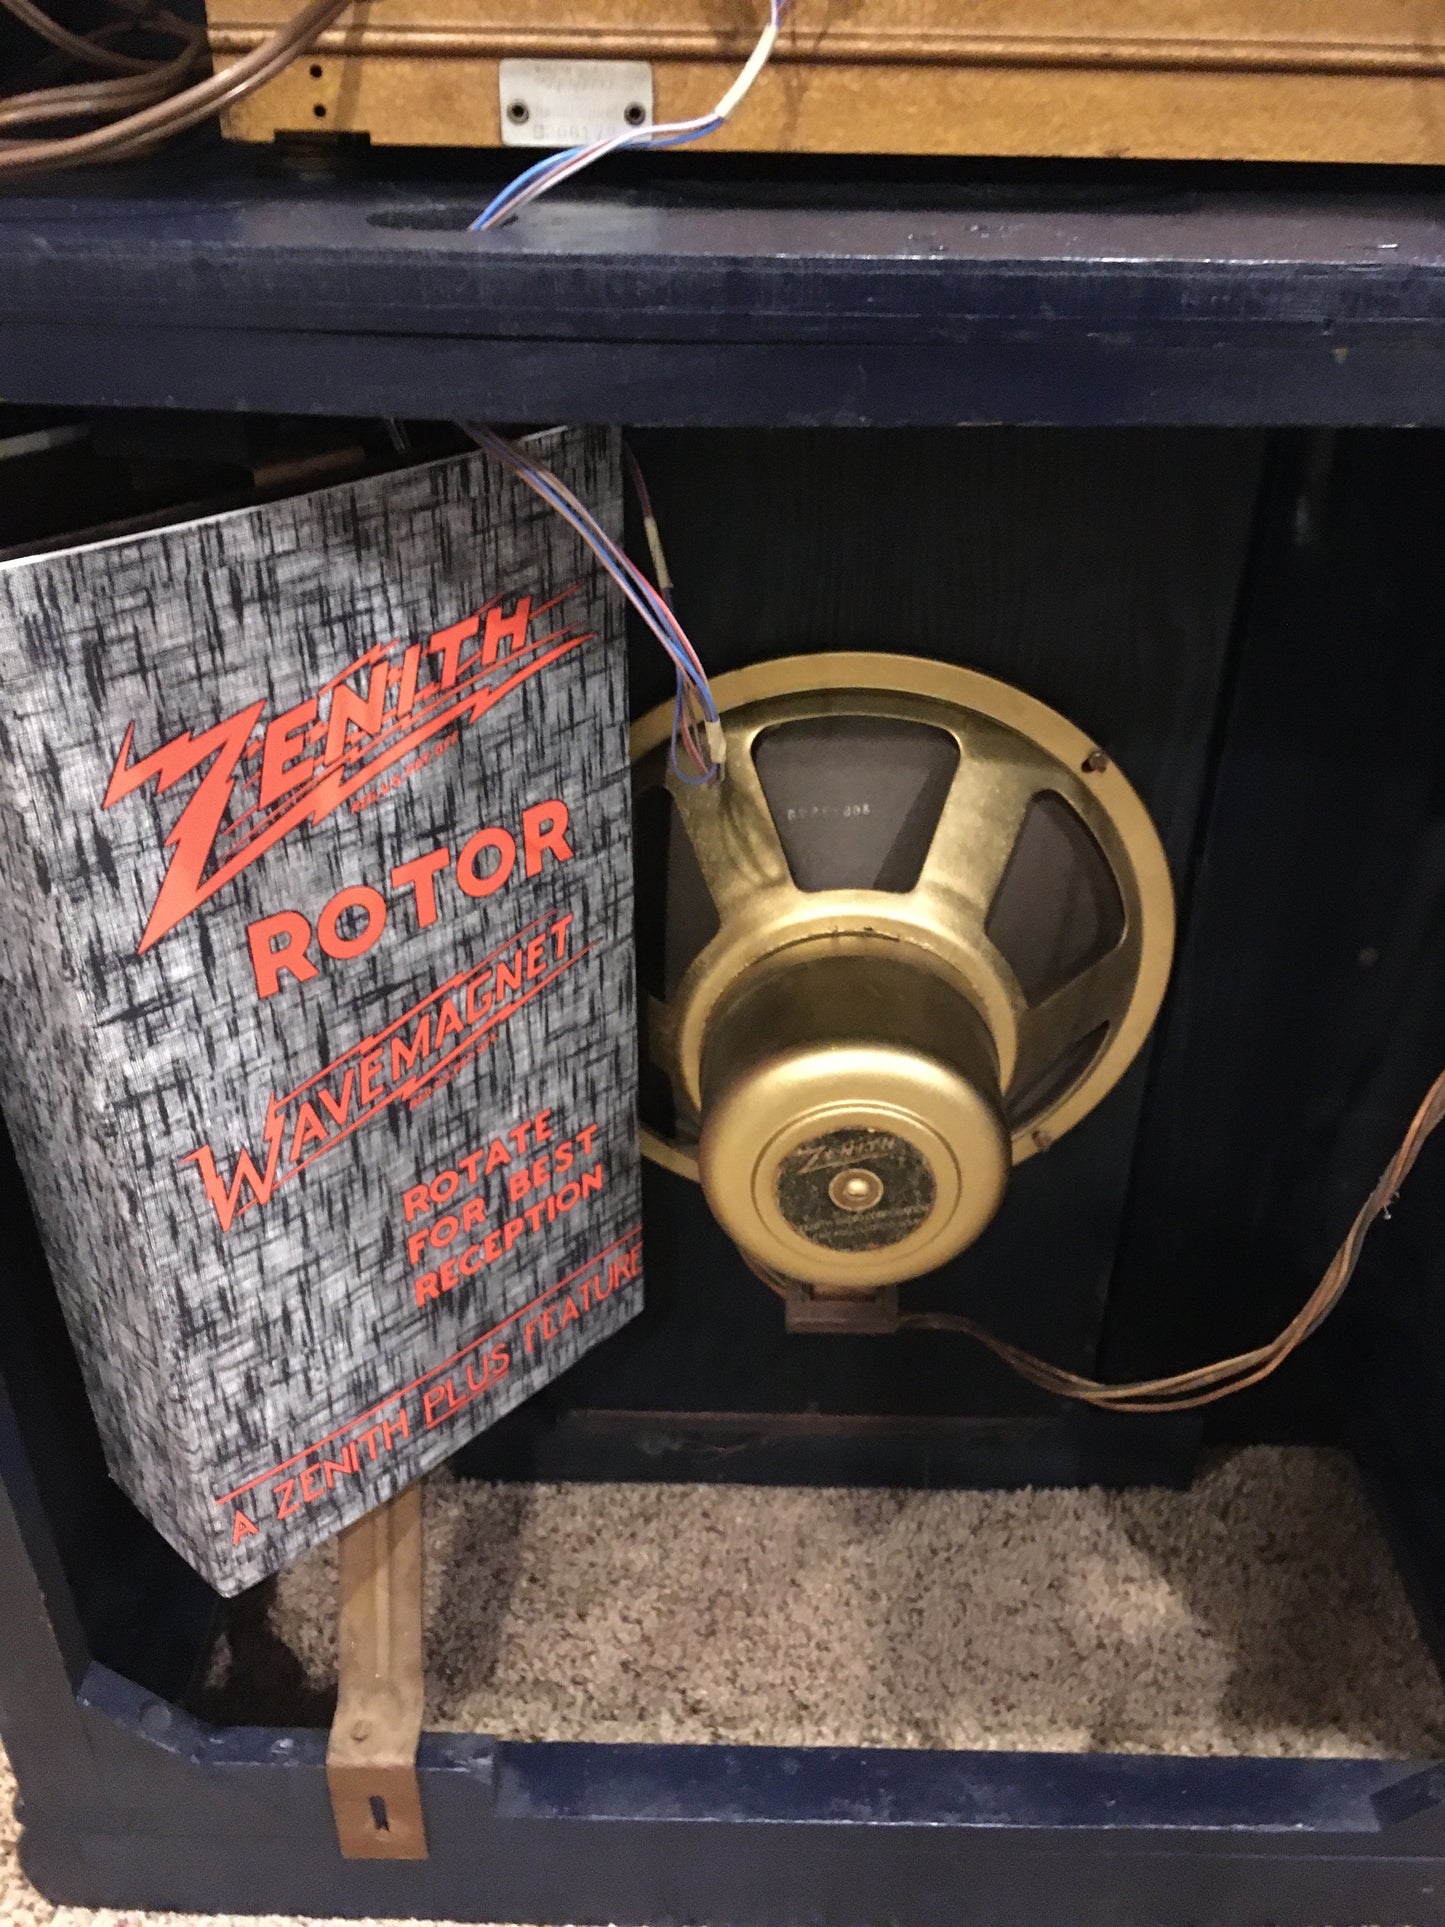 Zenith Radio 11s474 / Guitar Amplifier